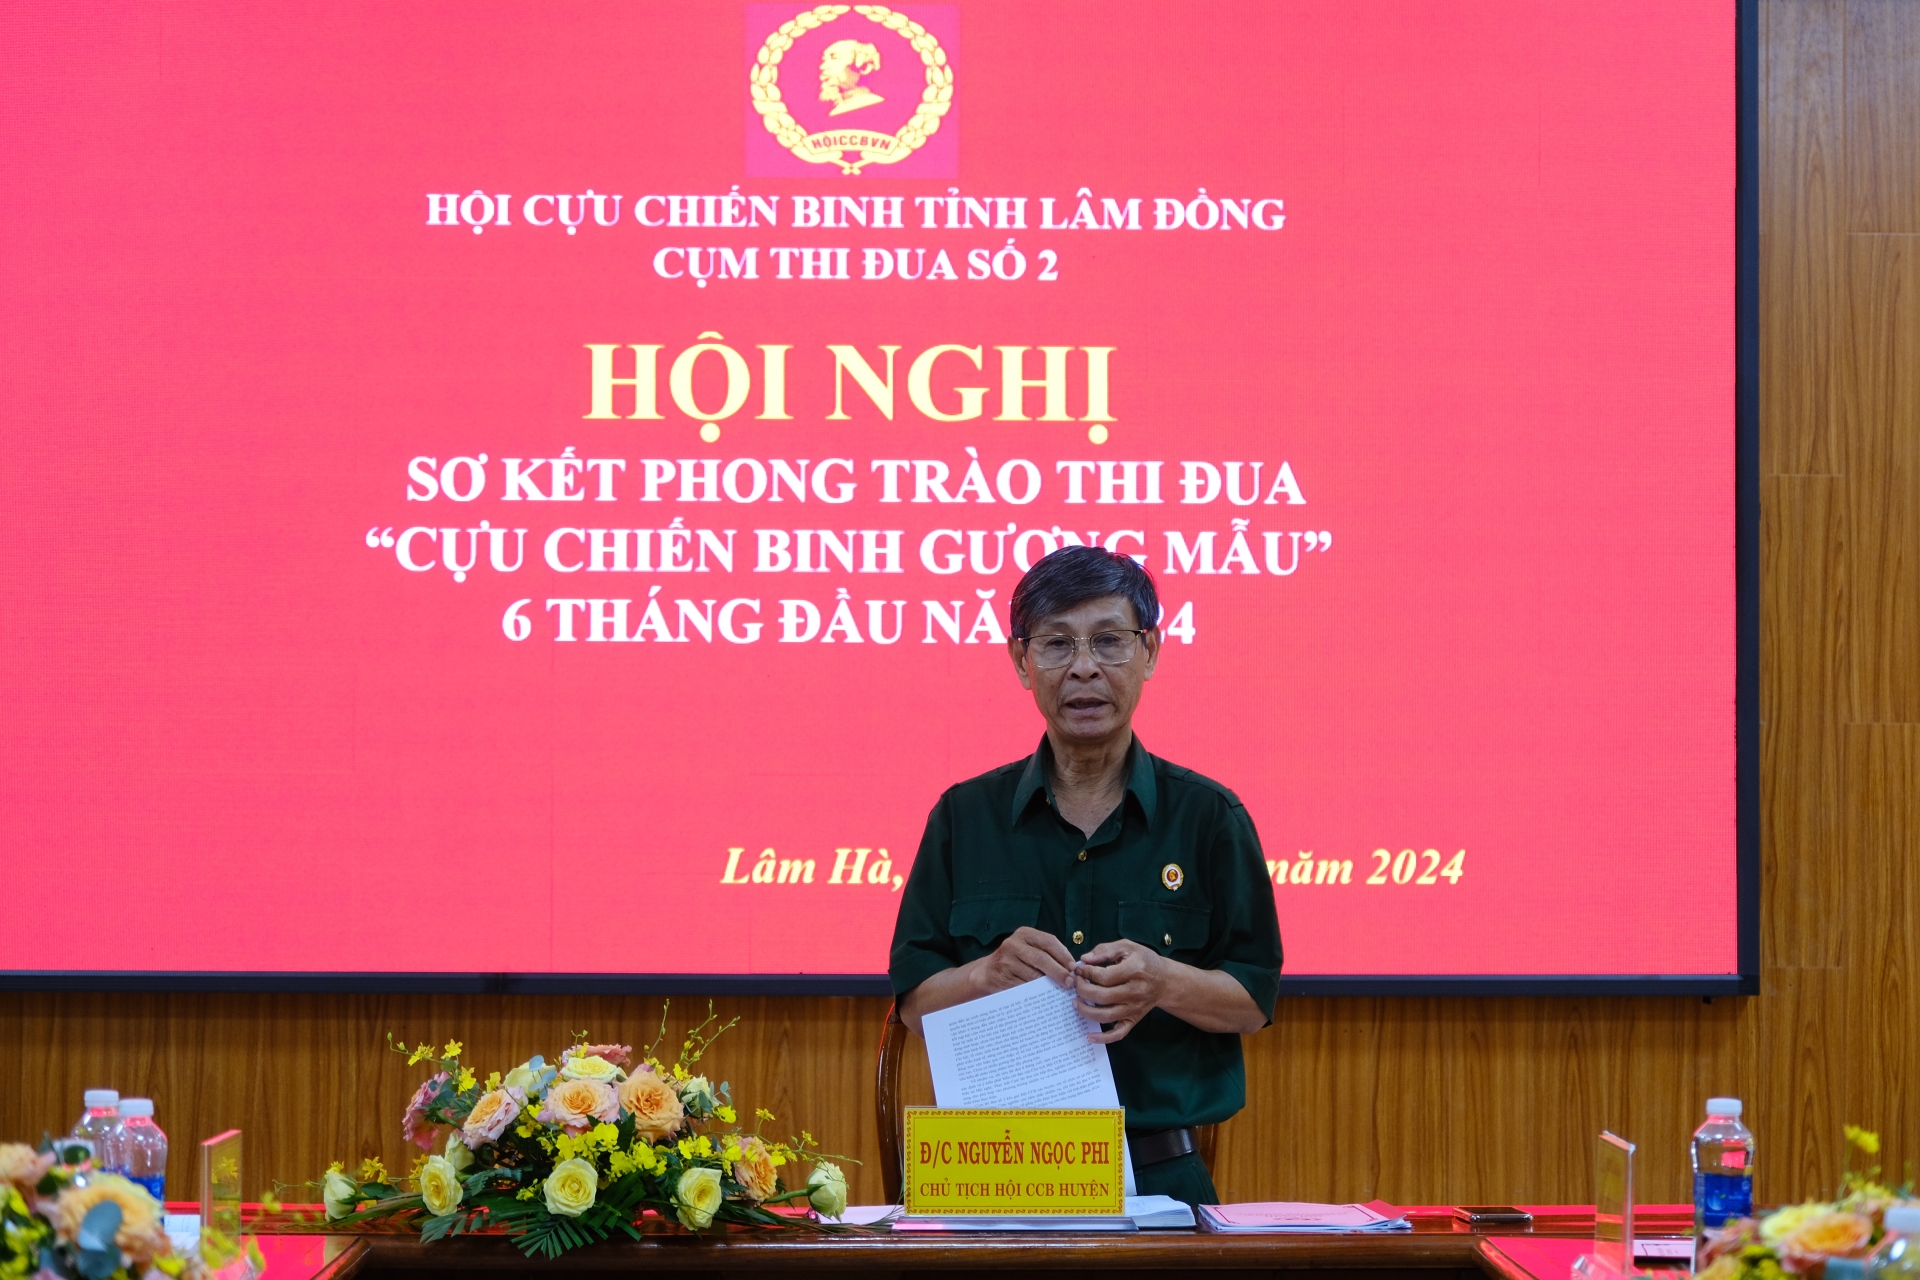 Ông Nguyễn Ngọc Phi – Chủ tịch Hội Cựu chiến binh huyện Lâm Hà, Cụm trưởng Cụm thi đua số 2 phát biểu tại hội nghị